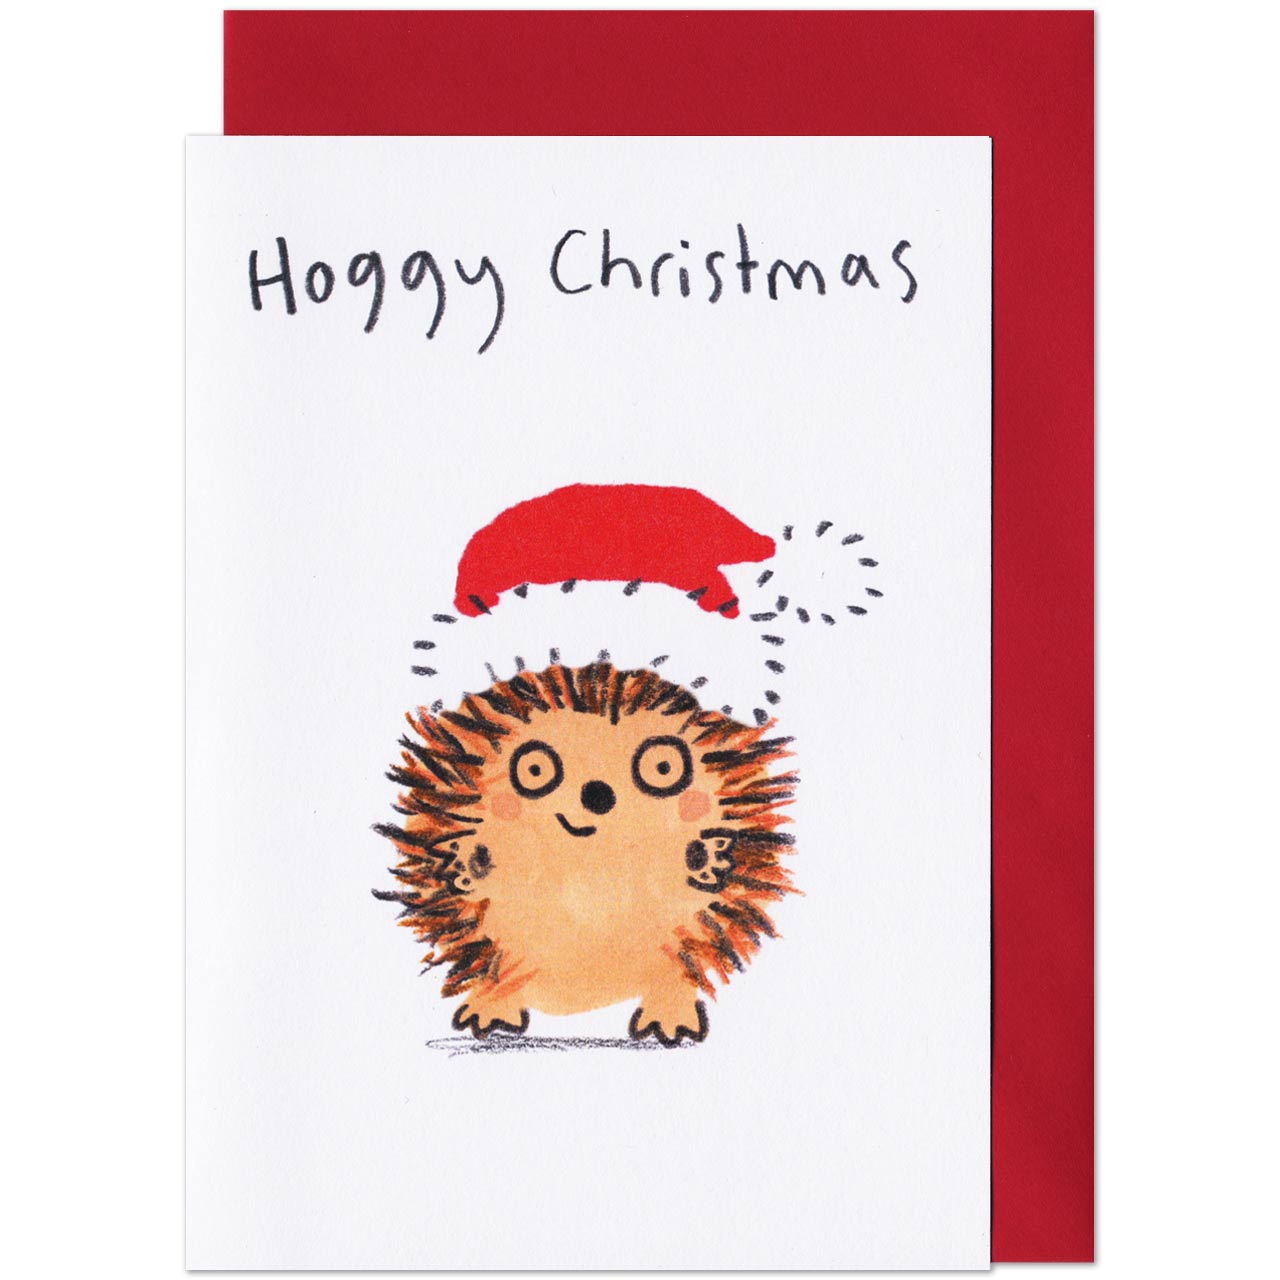 Hoggy Christmas Card